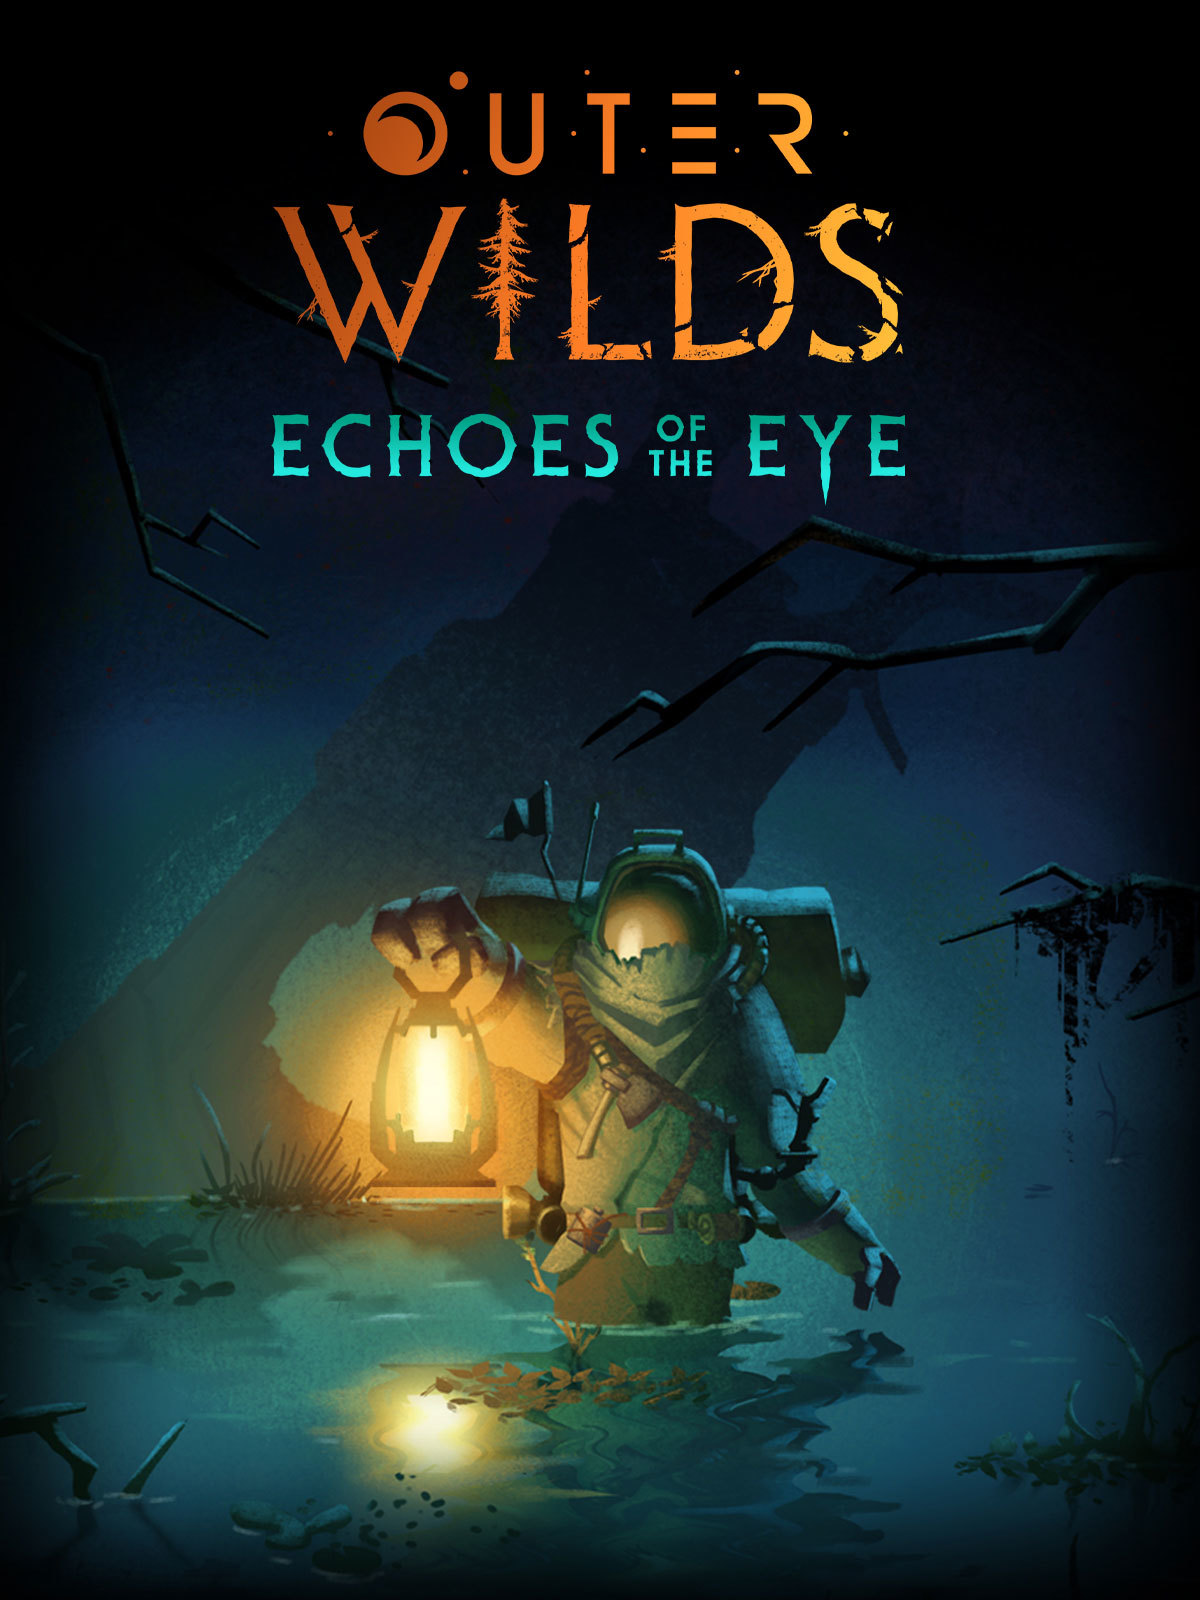 jaquette du jeu vidéo Outer Wilds: Echoes of the Eye